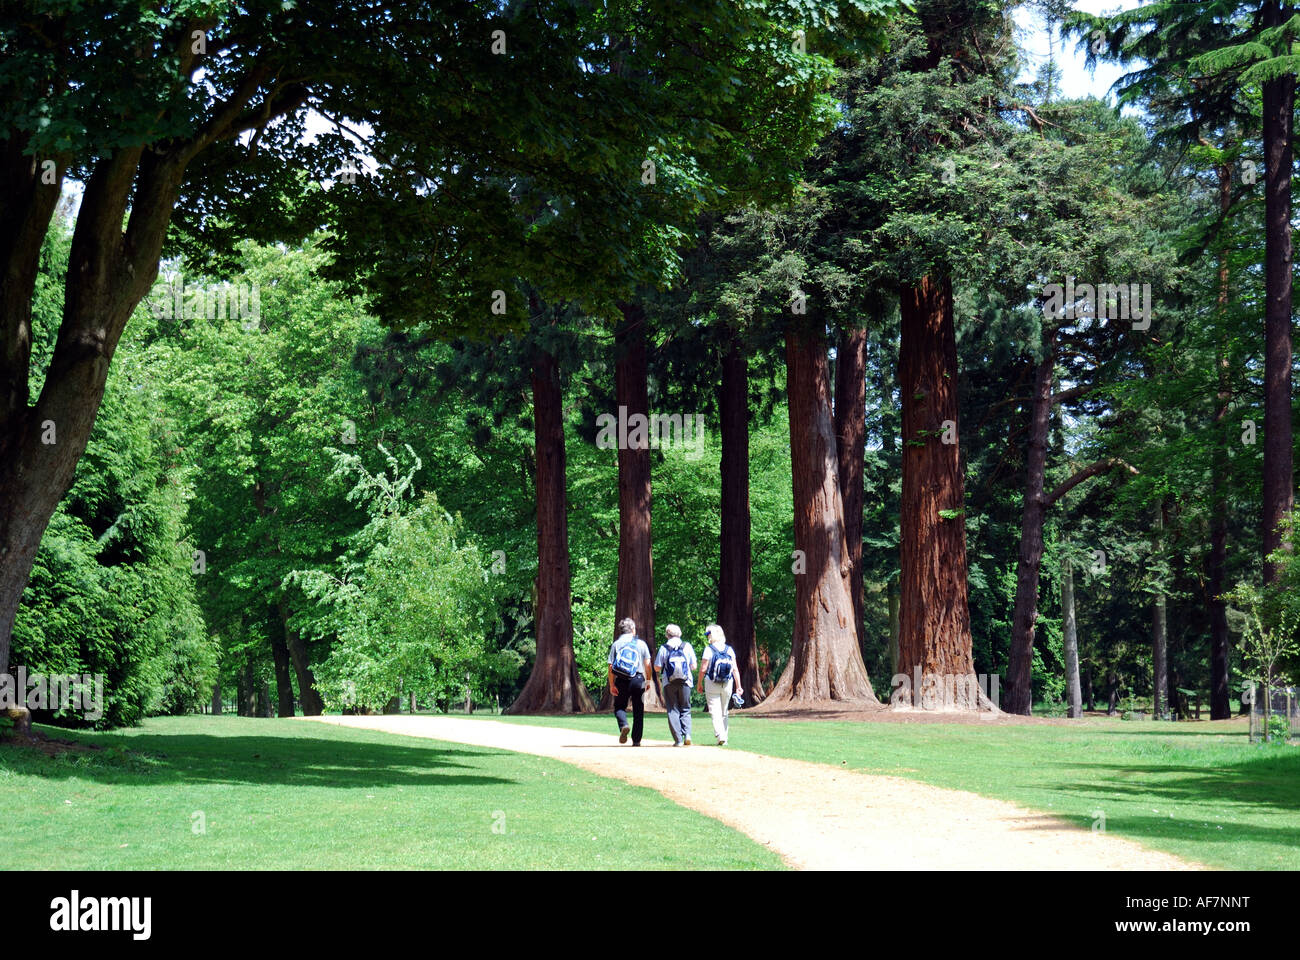 Gruppe zu Fuß auf den Weg, Valley Gardens, The Royal Landscape, Windsor Great Park, Virginia Water, Surrey, England, Vereinigtes Königreich Stockfoto